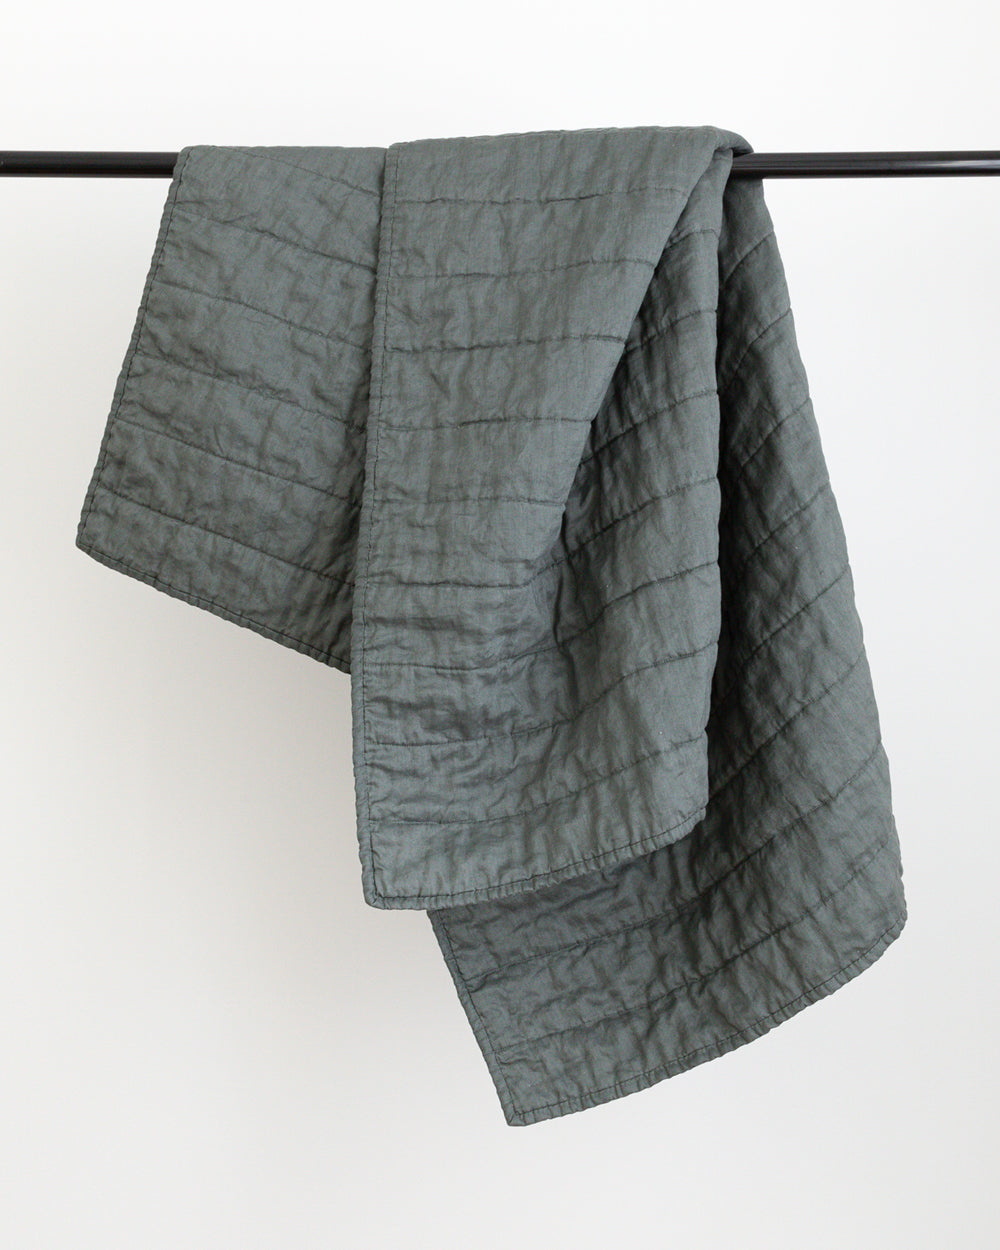 Dark green colour handmade Linen Quilt folded over black rod